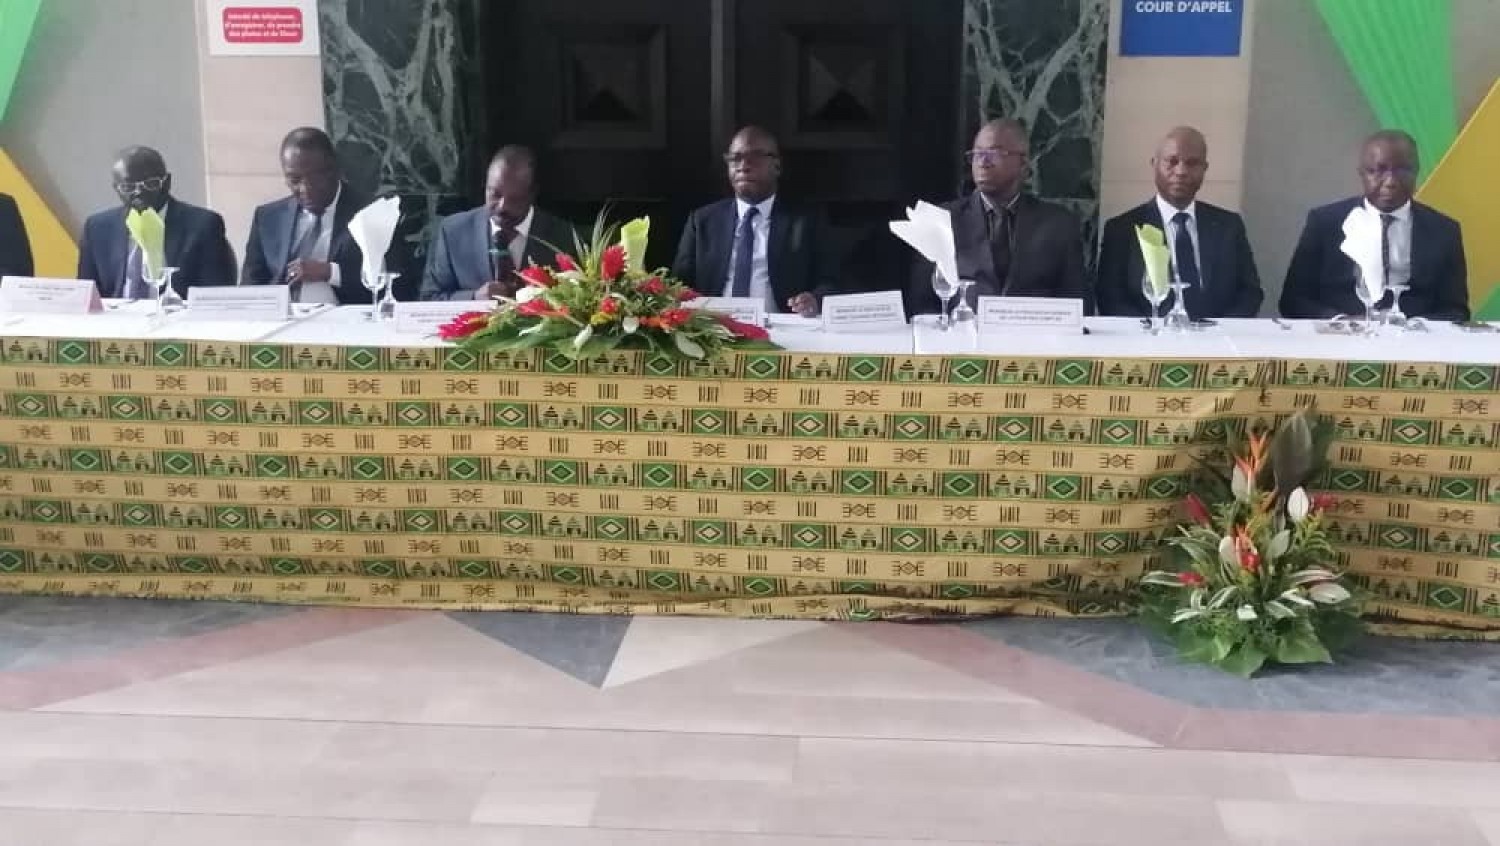 Côte d'Ivoire:    L'inspection générale des services judiciaires et pénitentiaires, reproche des manquements à un régisseur et à 62 agents d'encadrement